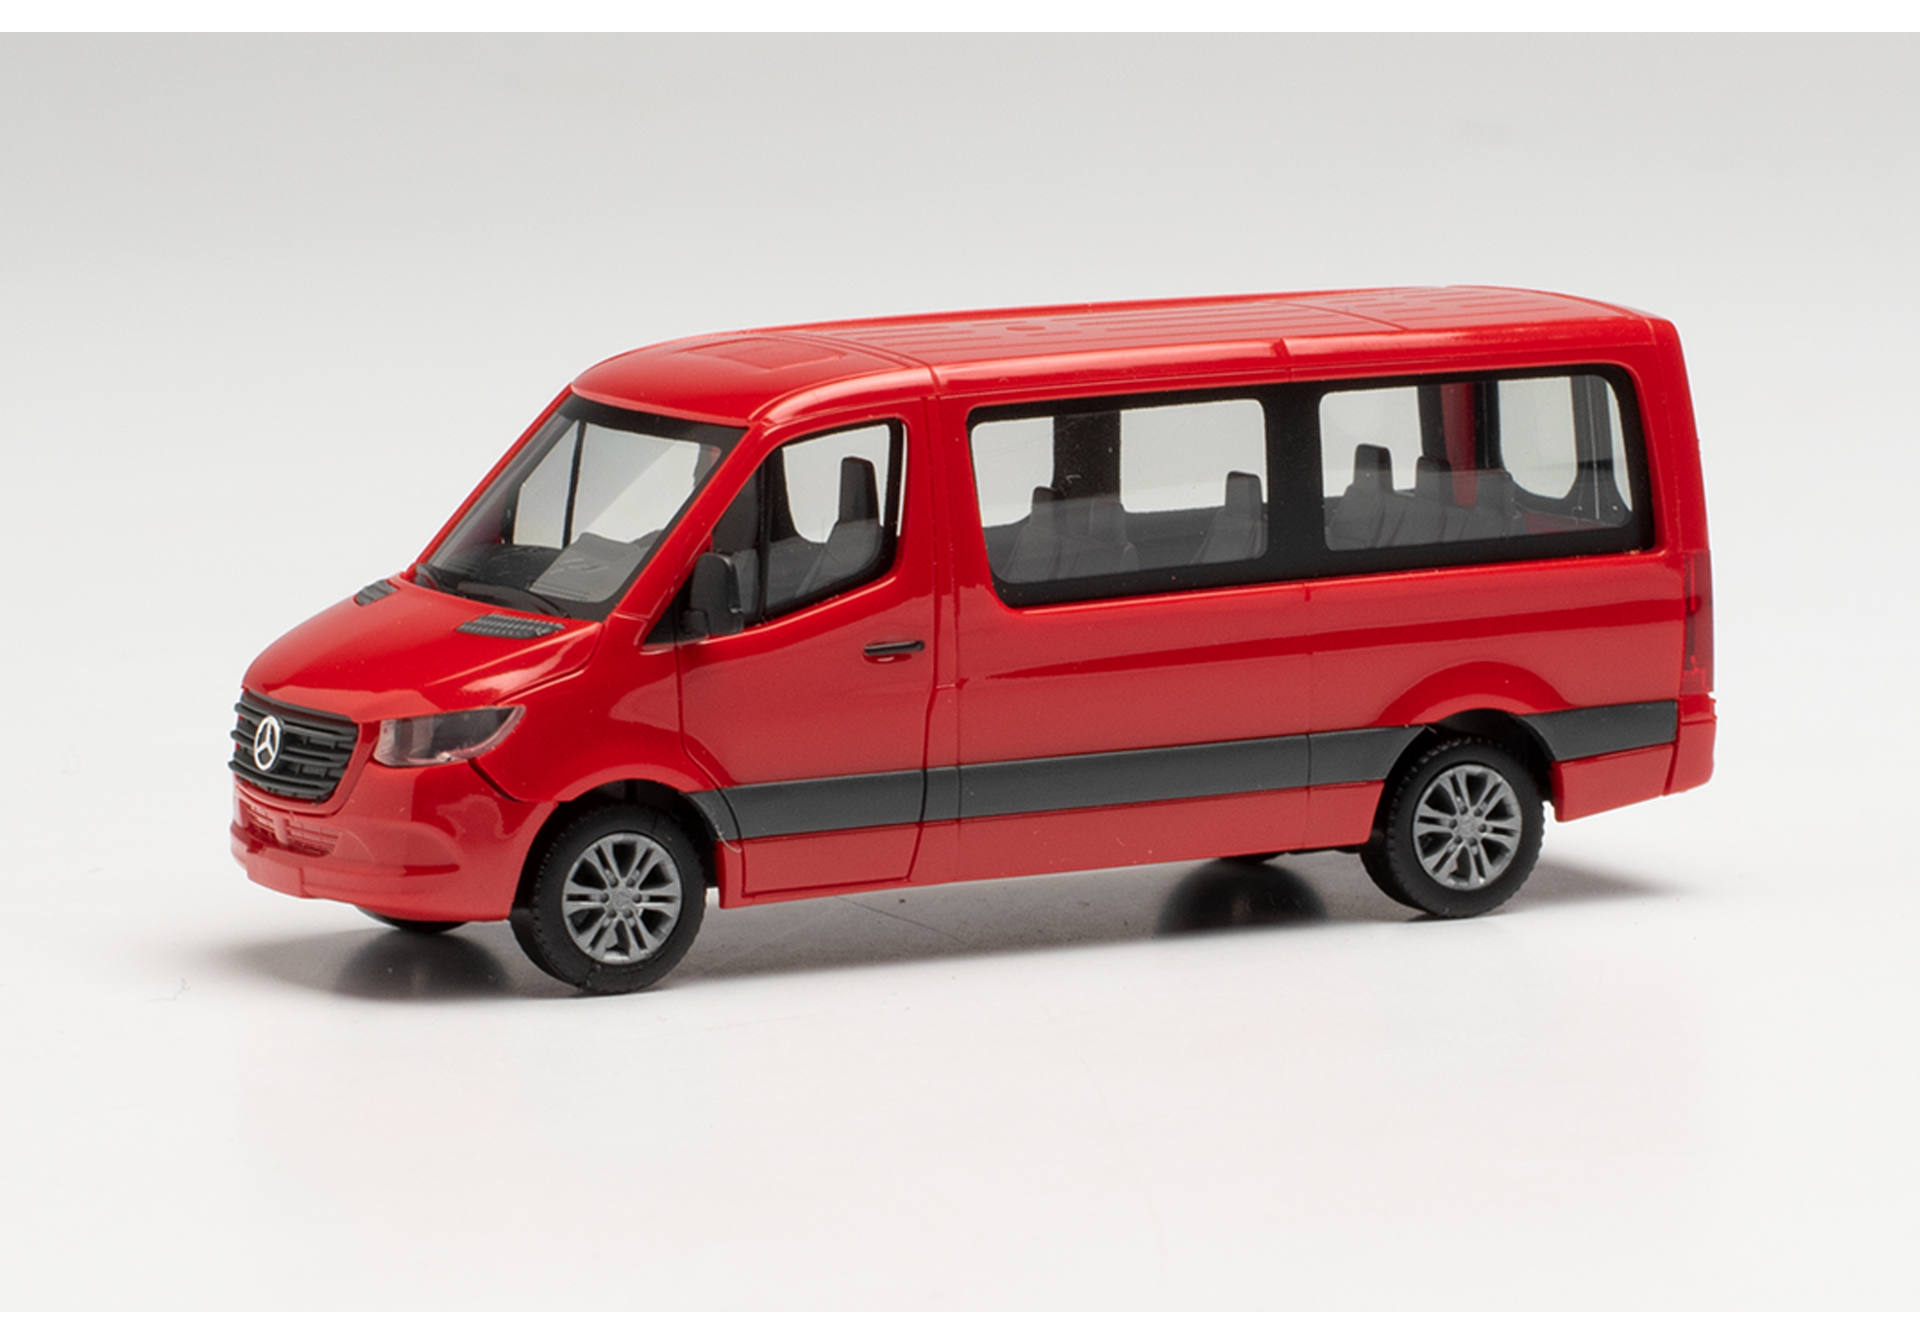 Mercedes-Benz Sprinter `18 Bus Flachdach, rot